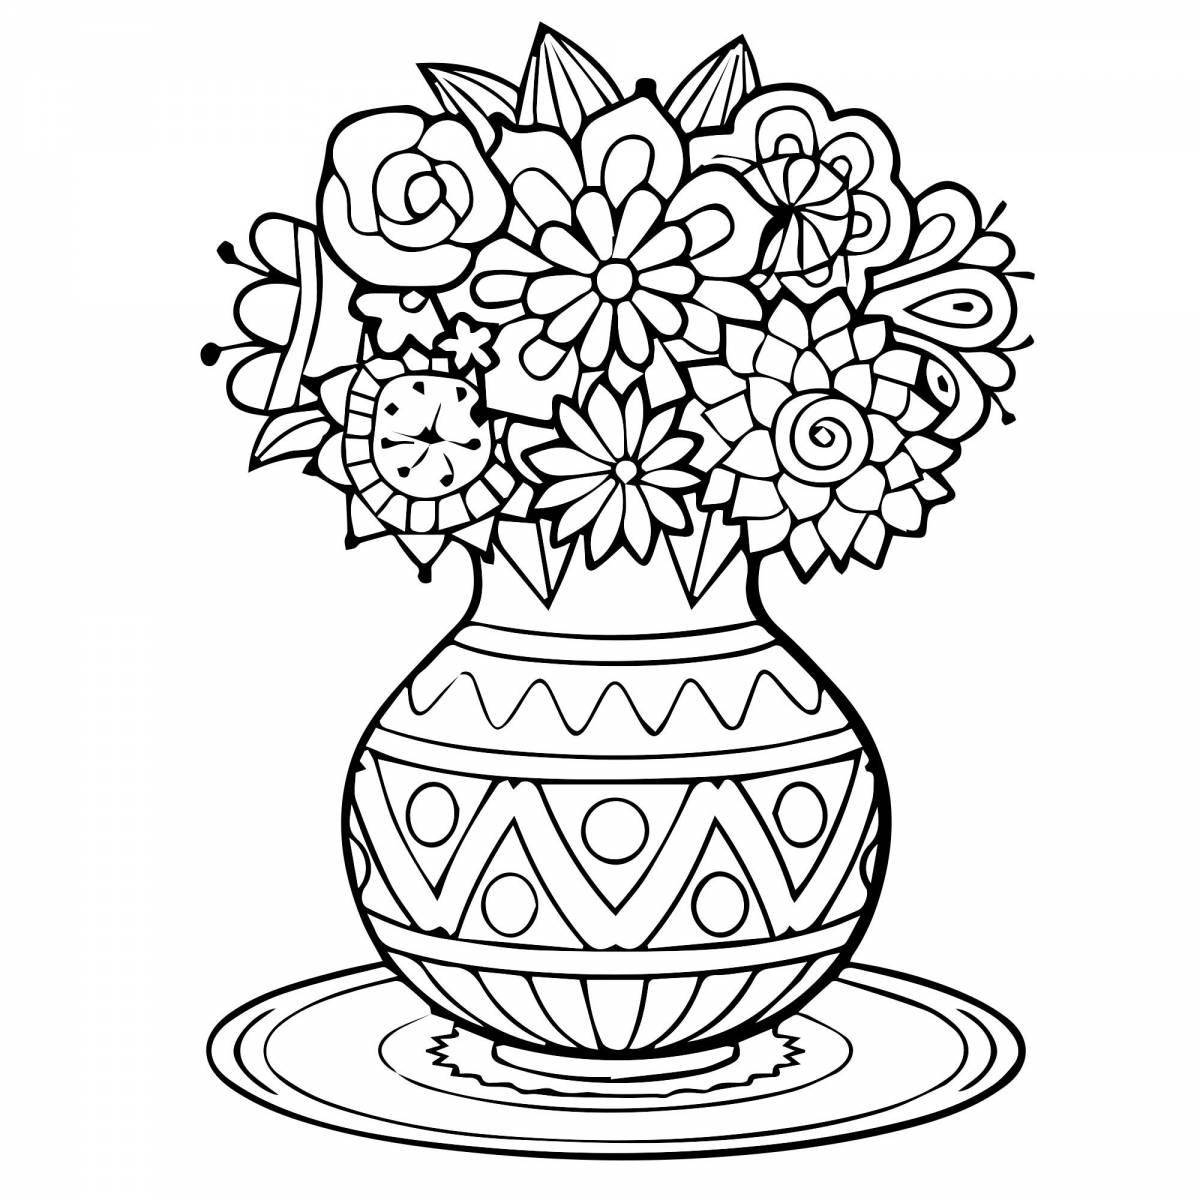 Exalted flower vase for children aged 8-9